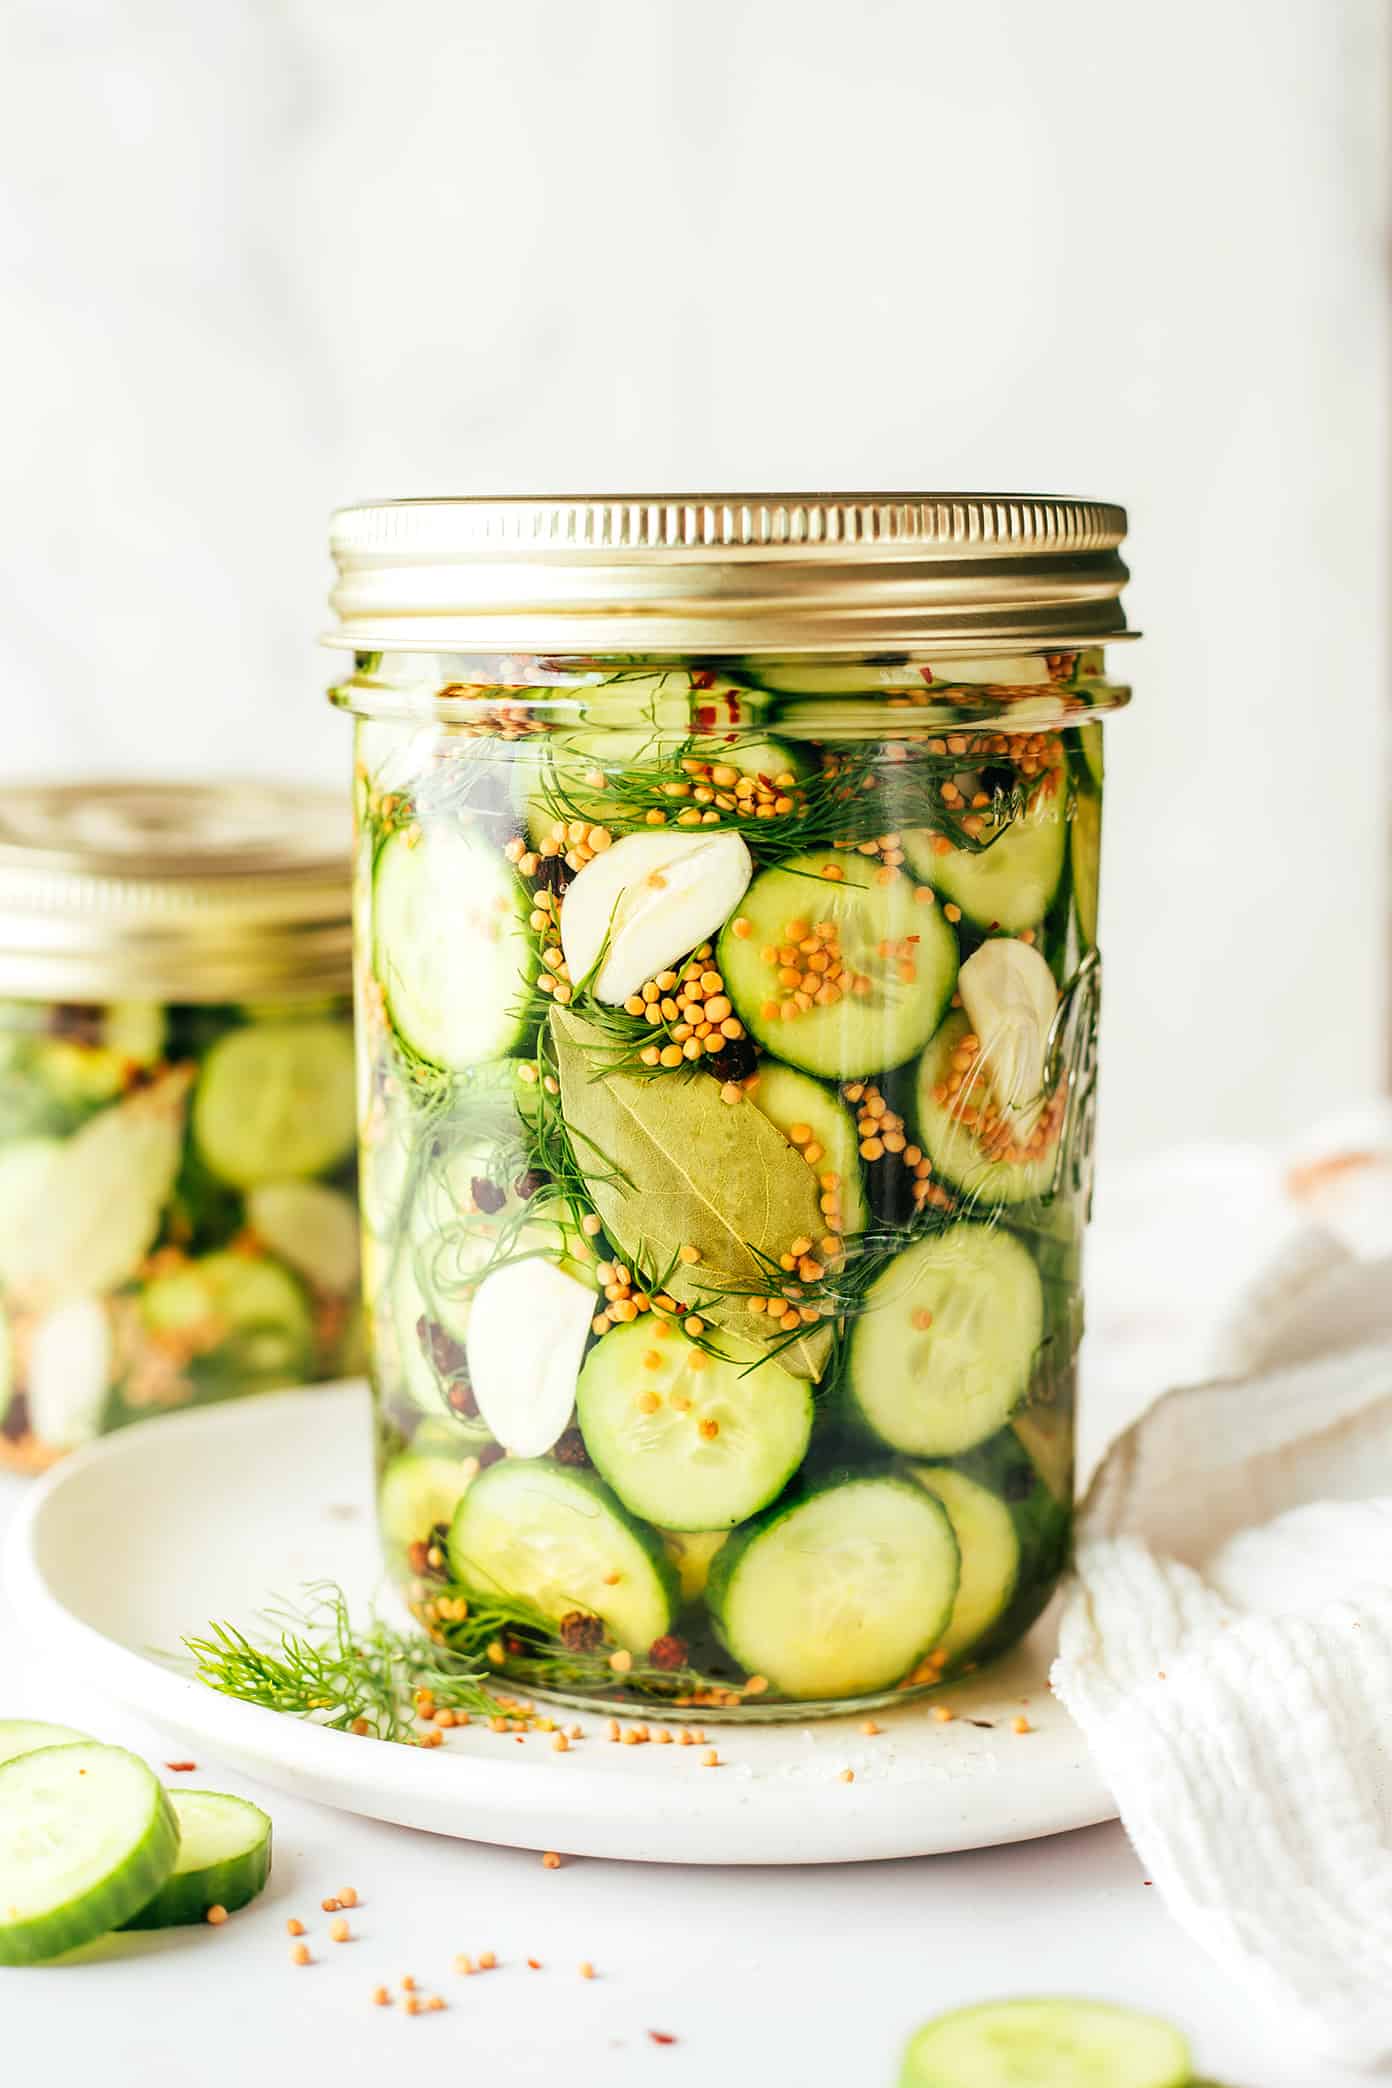 https://www.gimmesomeoven.com/wp-content/uploads/2016/07/Homemade-Pickles-Recipe-9.jpg